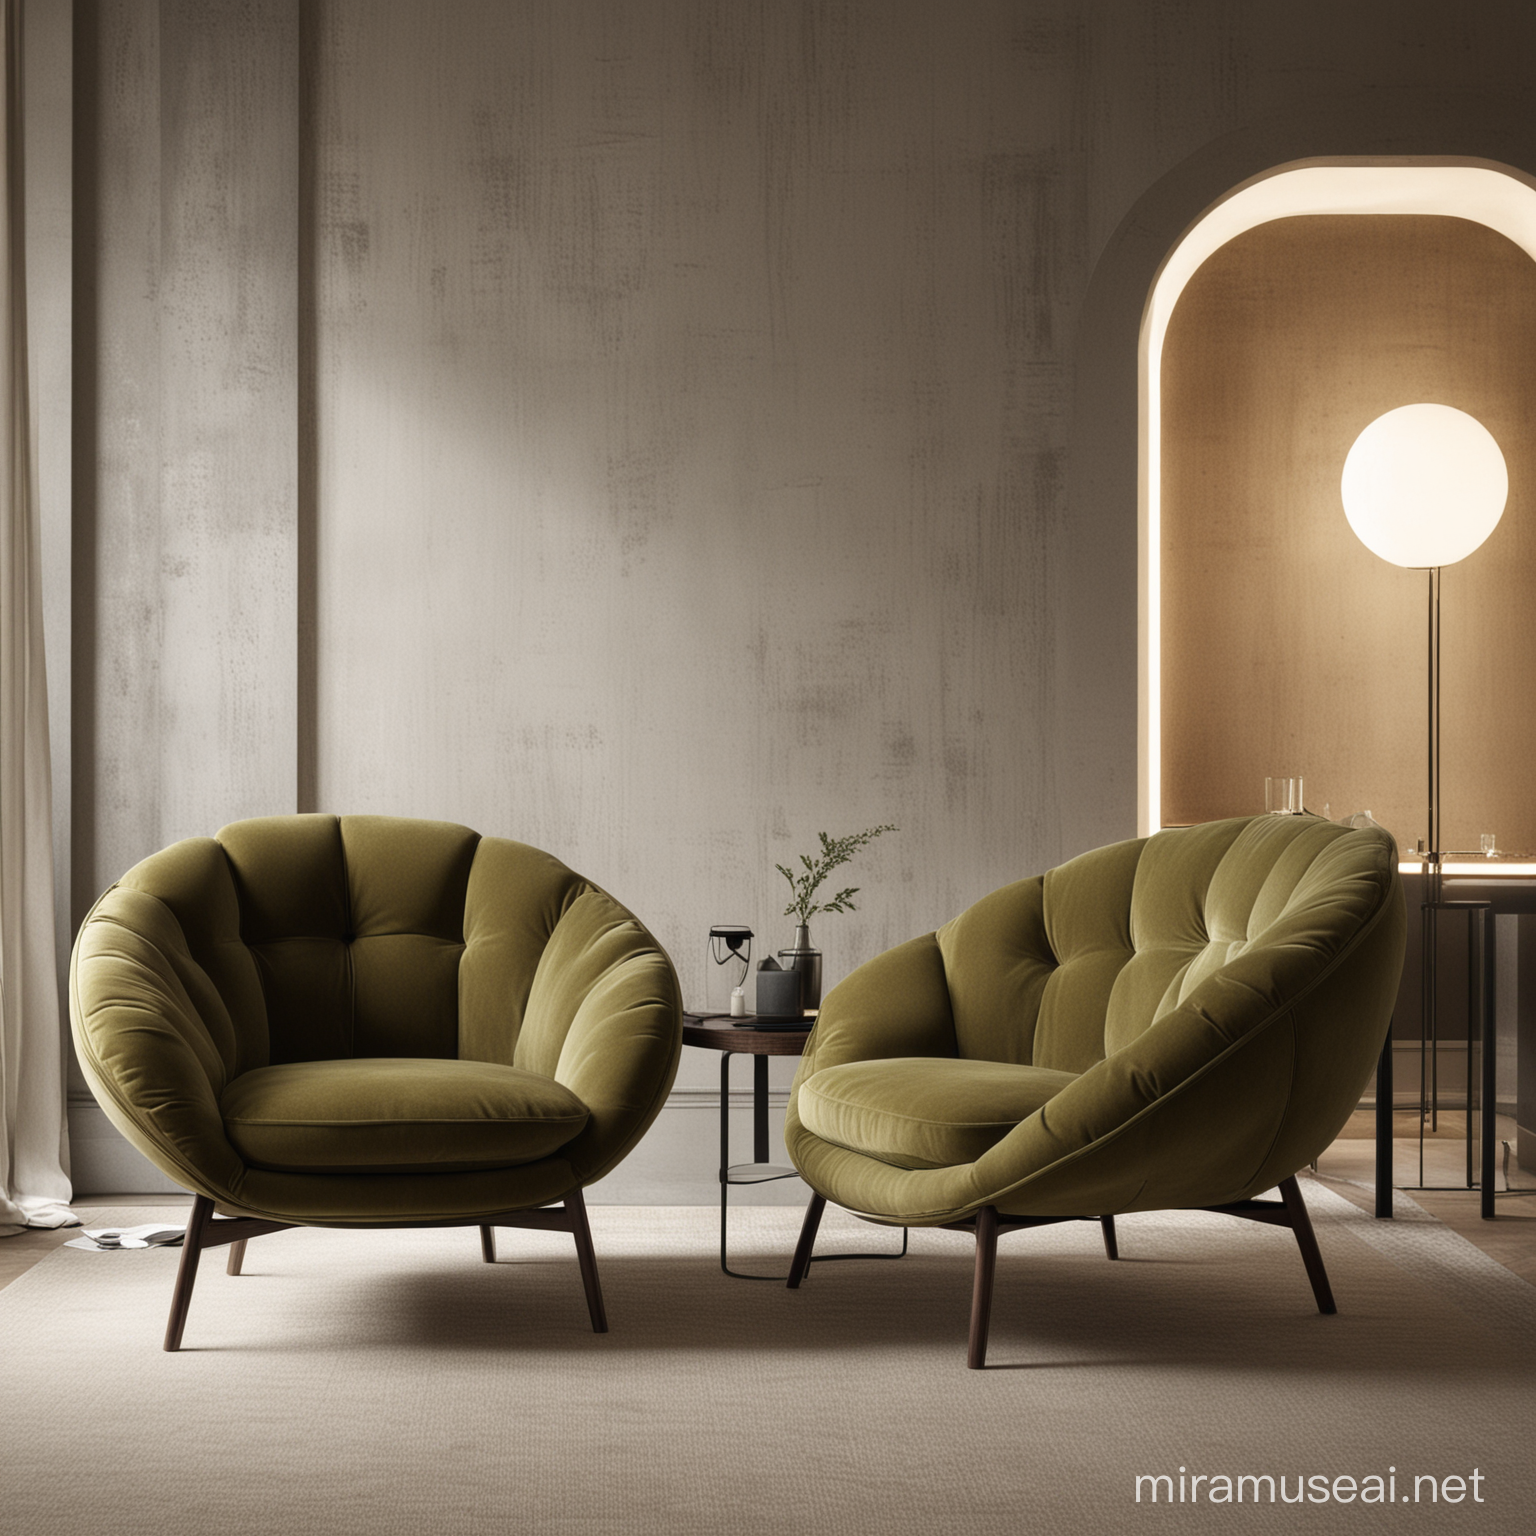 Organic Armchair Designs Set of Three Unique Black Olive Furniture Pieces